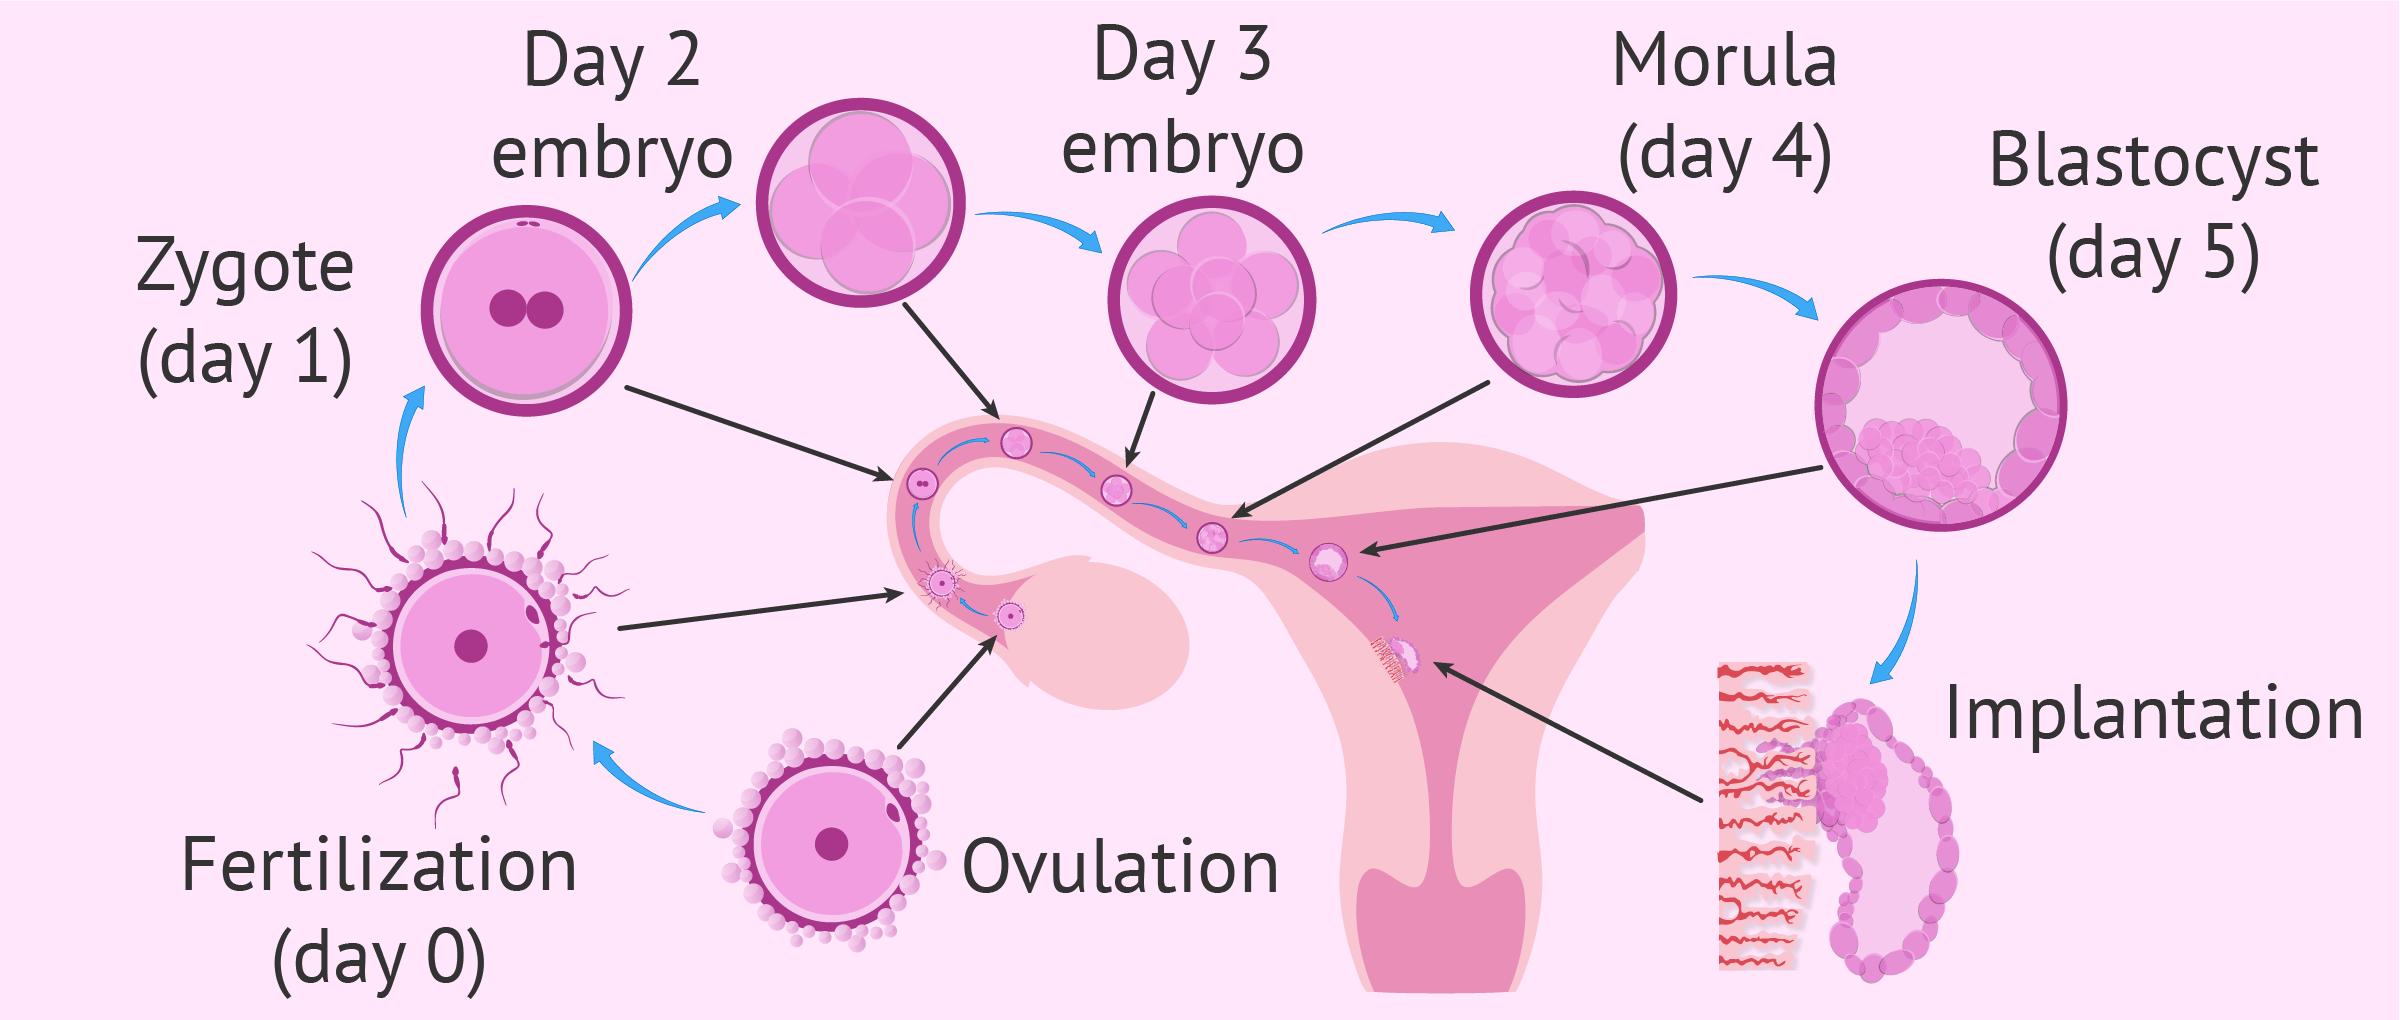 Transferencia embrionaria cuando se implanta